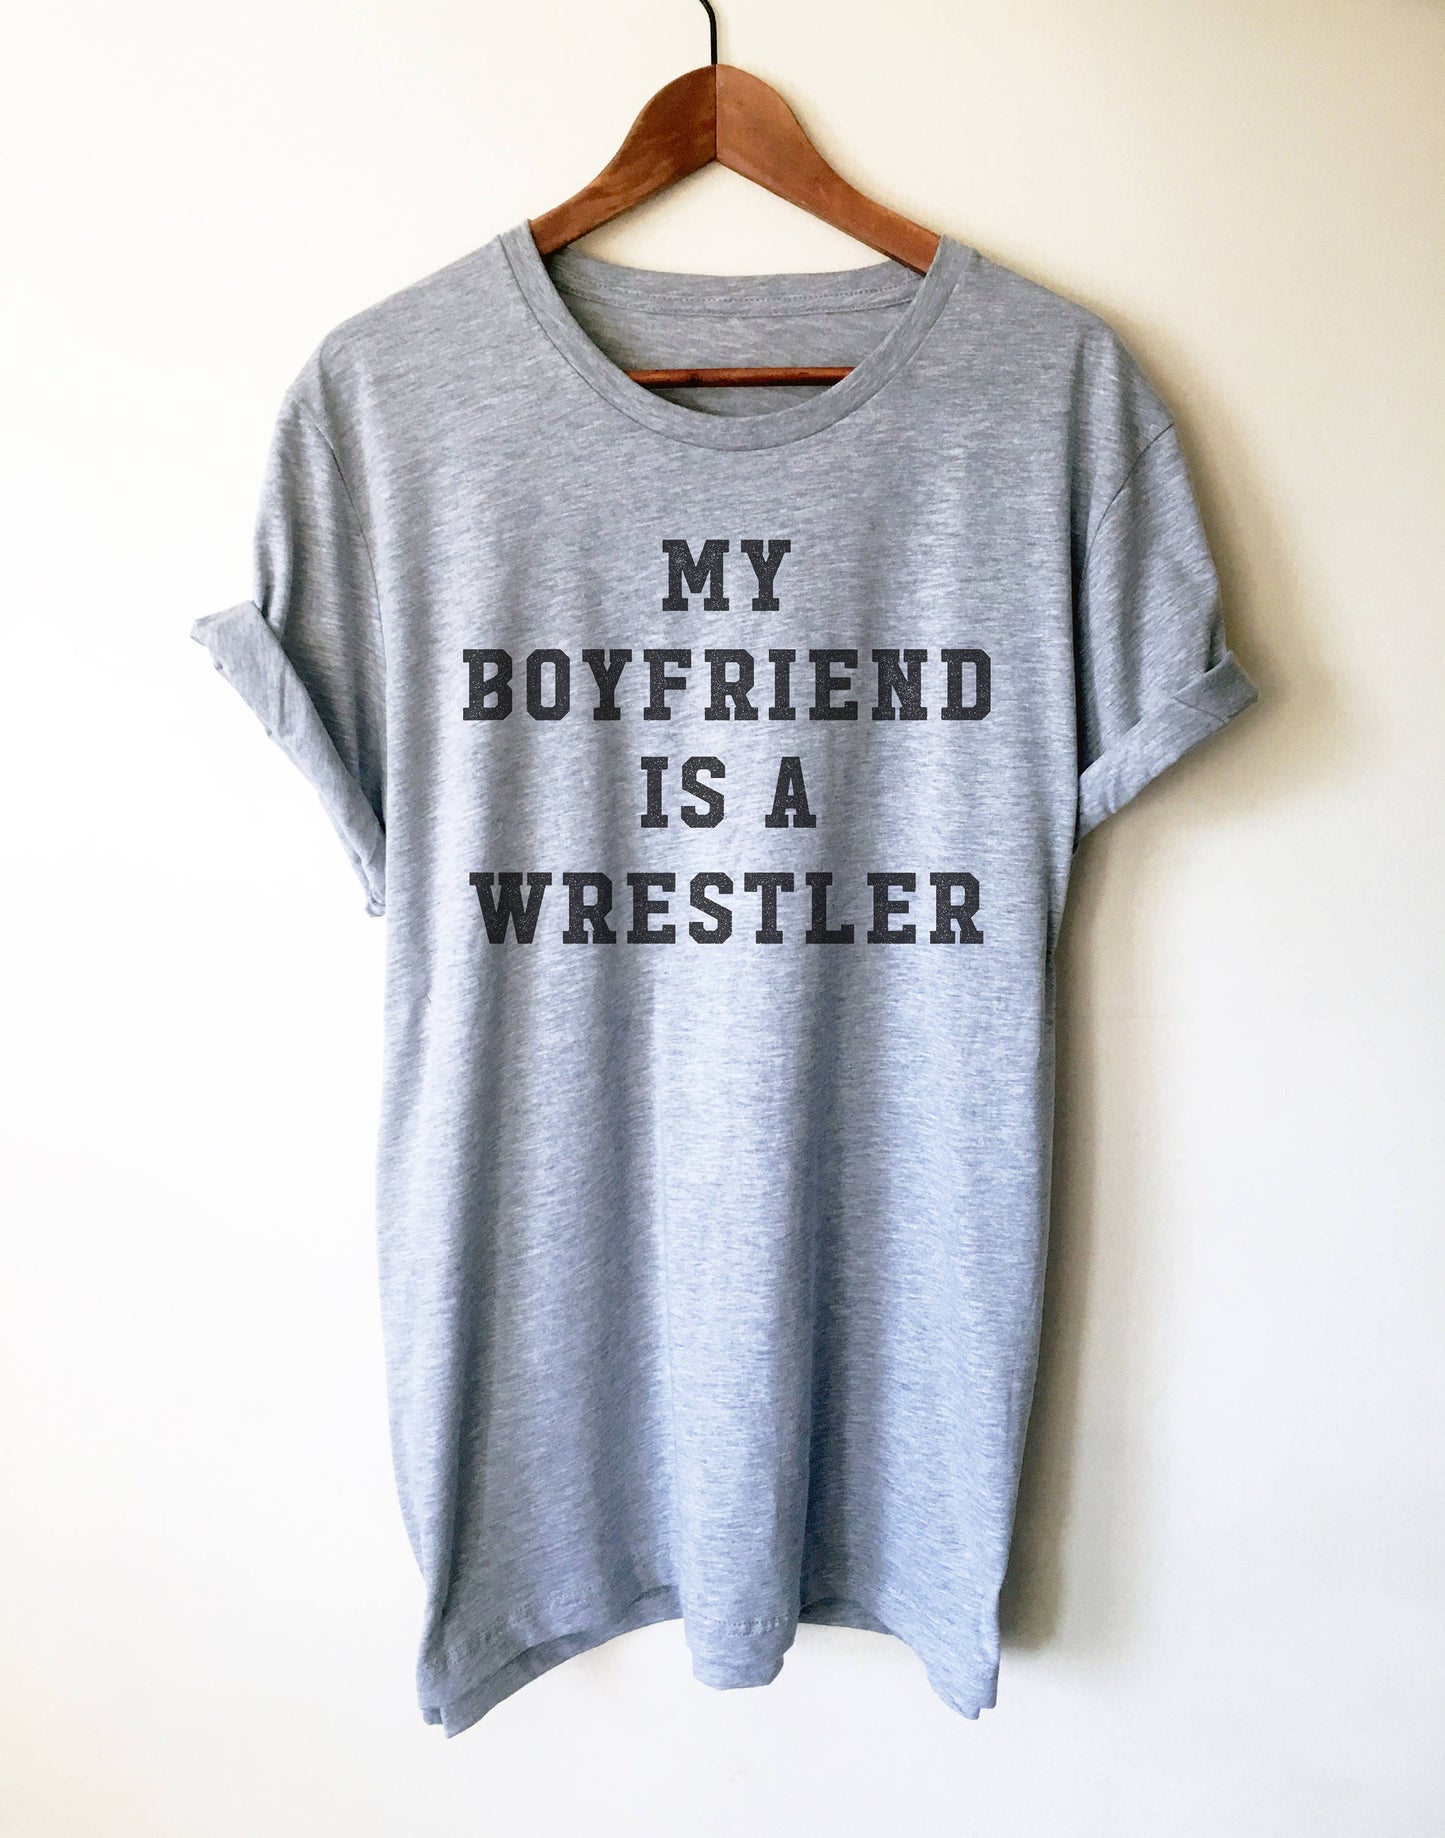 My Boyfriend Is A Wrestler Unisex Shirt - Wrestling, Wrestler, Wrestling Fan, Wrestling T-Shirt, Wrestling Shirt, Wrestling Girlfriend